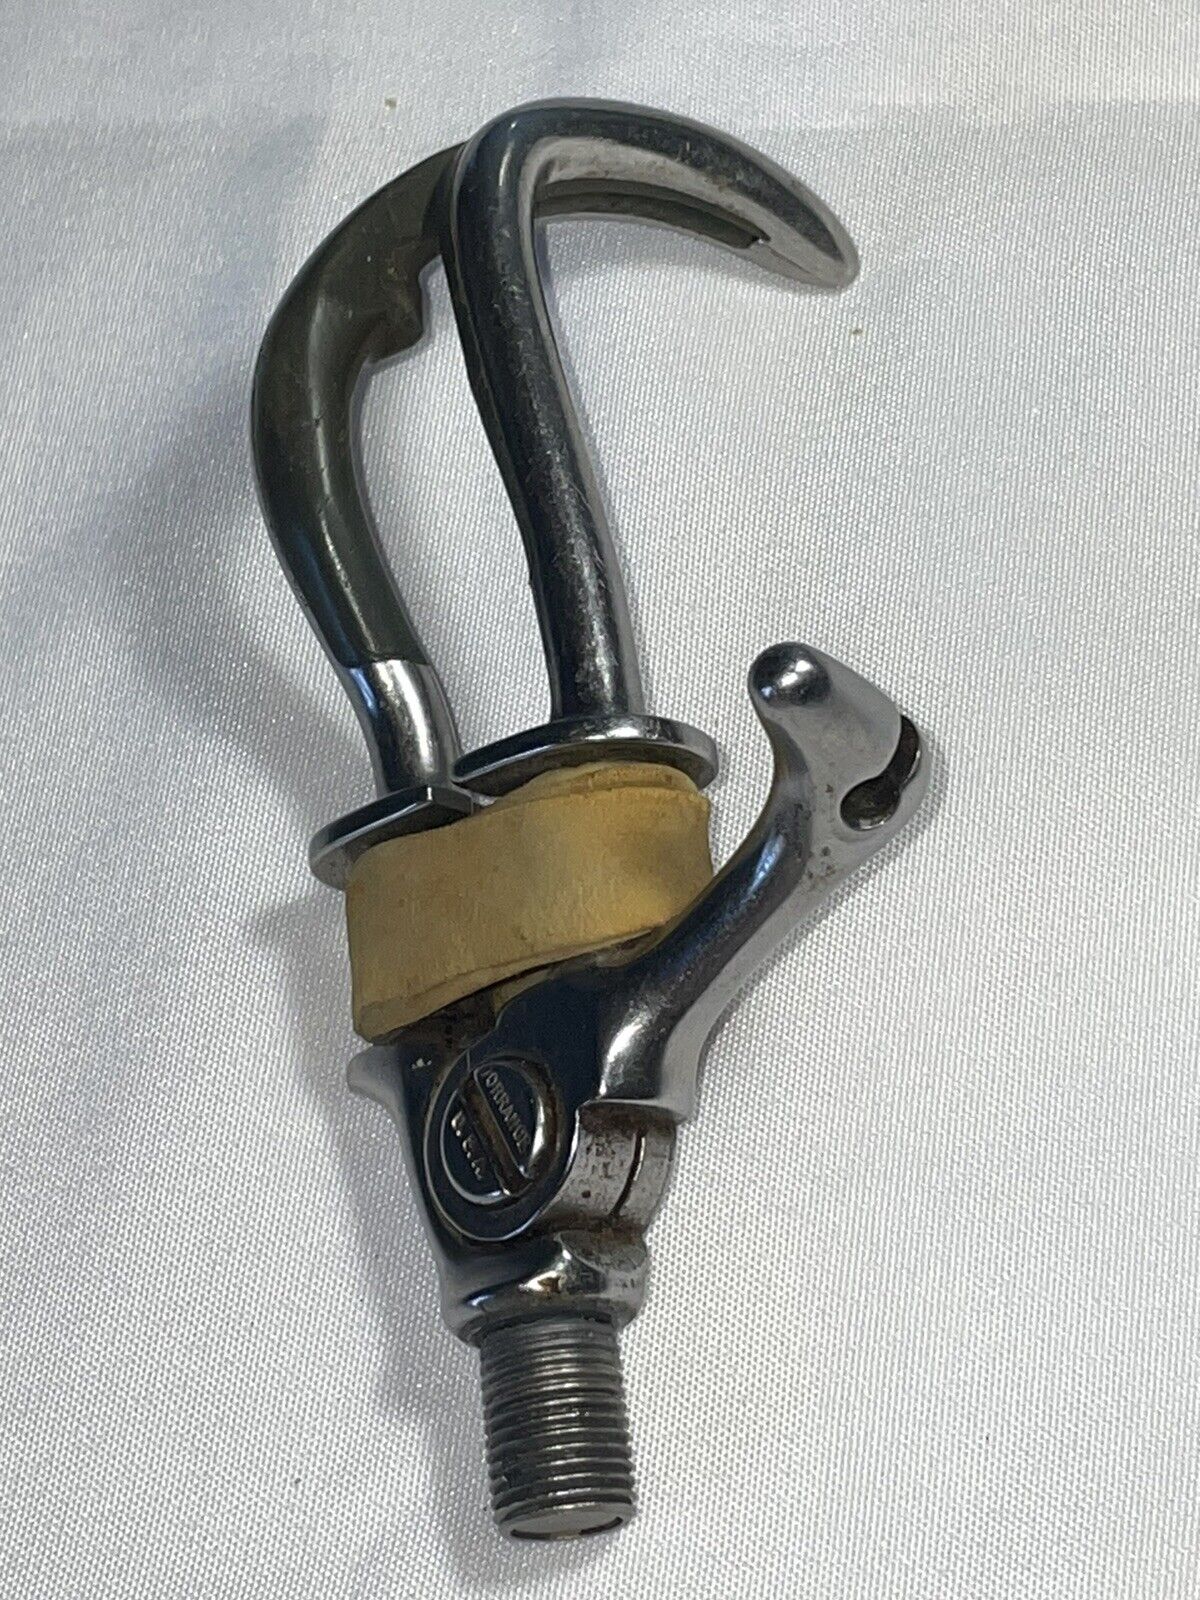 Hosmer Dorrance 5X Prosthetic Left Hook, Stainless Steel, w/Nitryl, Flawless